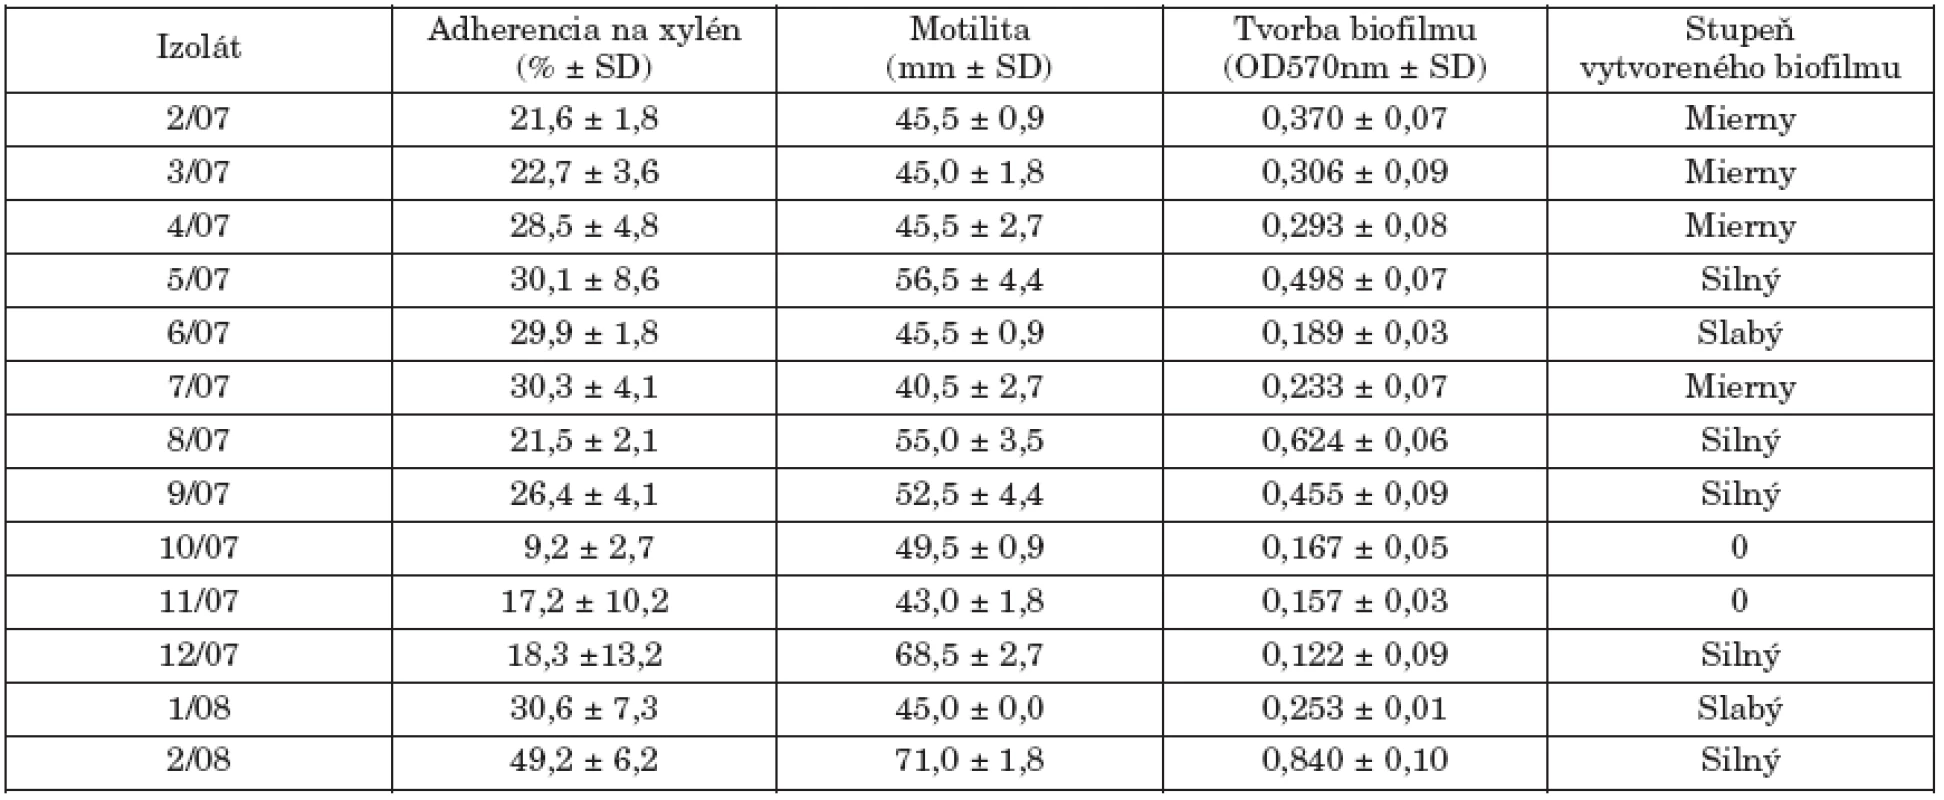 Hodnotené markery virulencie kmeňov S. Paratyphi B dT+ (S. Java).
Table 2. Selected virulence markers in strains of S. Paratyphi B dT+ (S. Java)